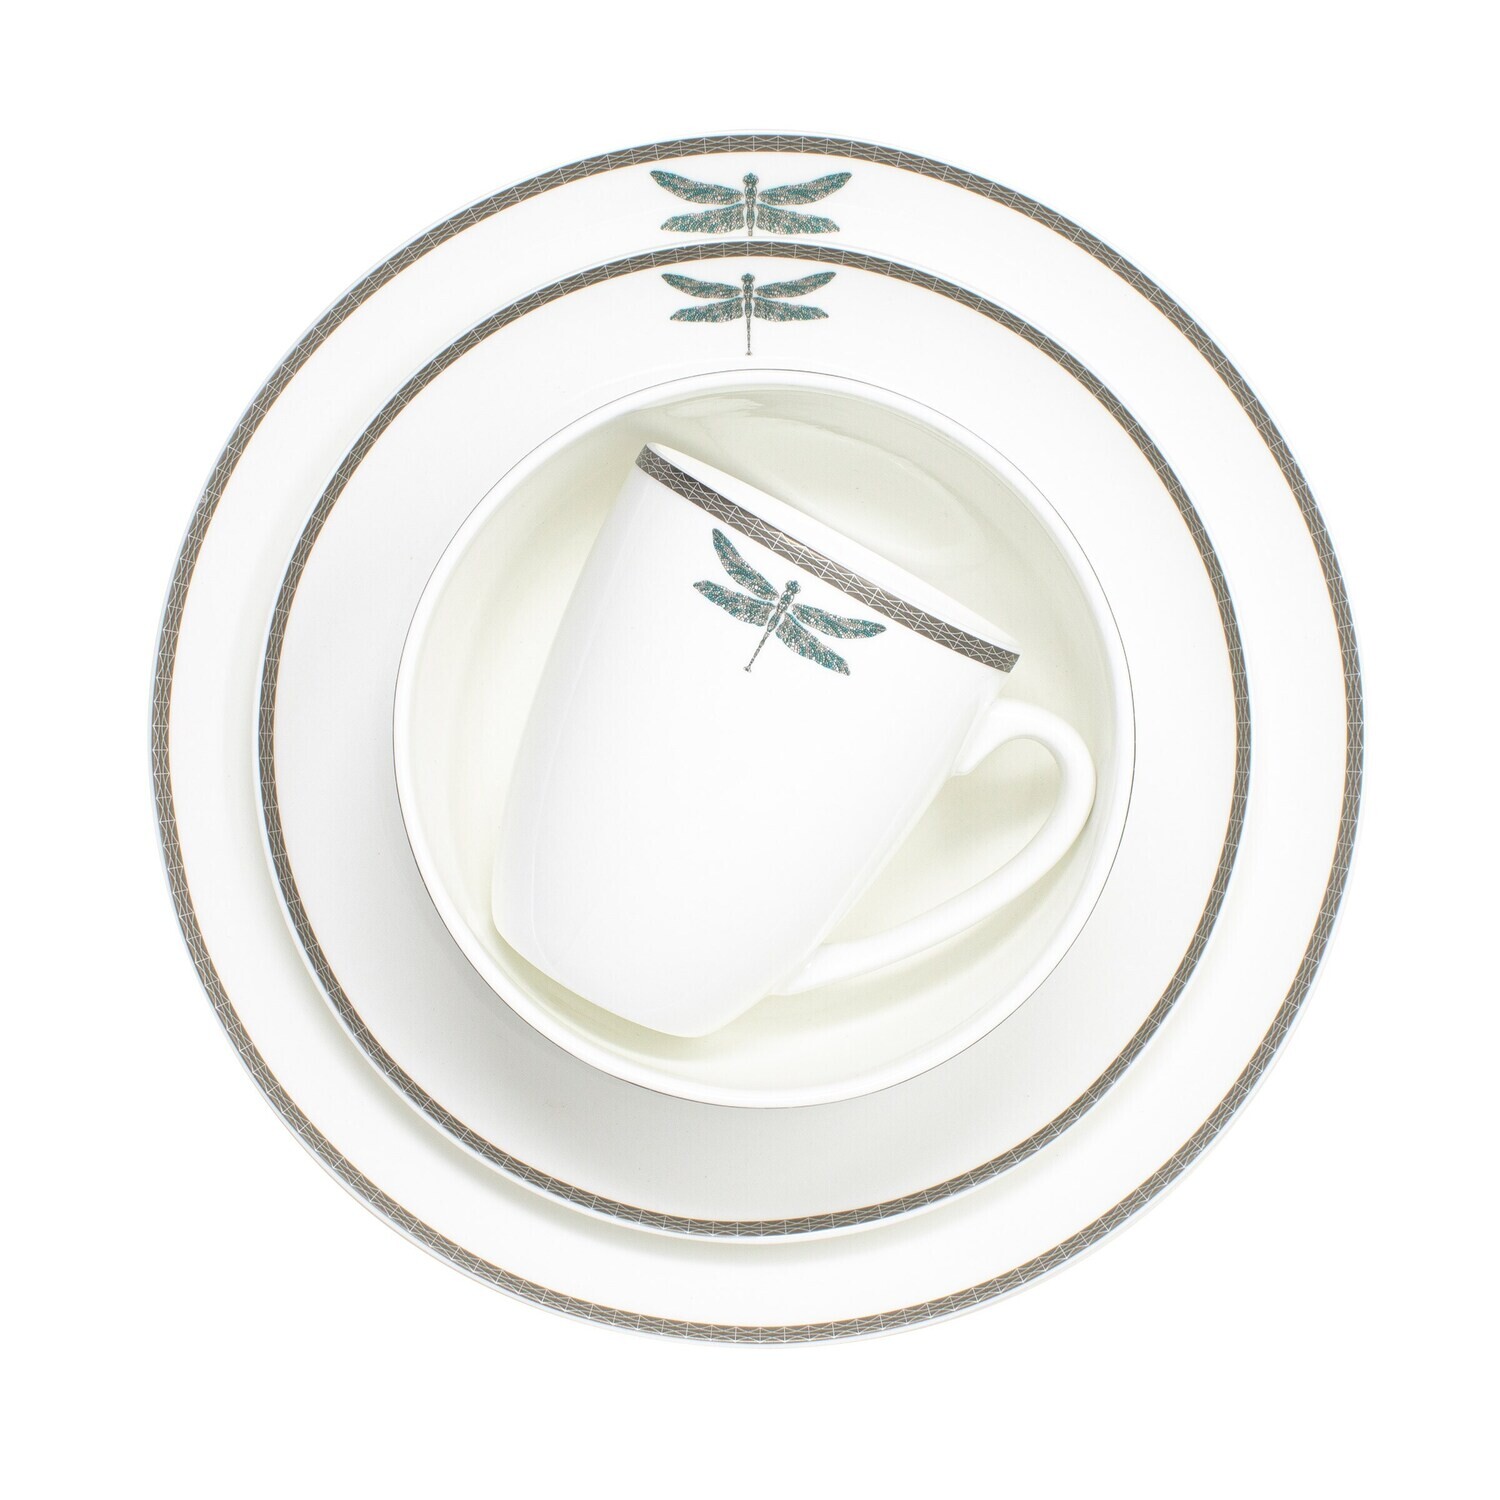 Mikasa Kimberly Bone China Dinnerware Set, 16-piece